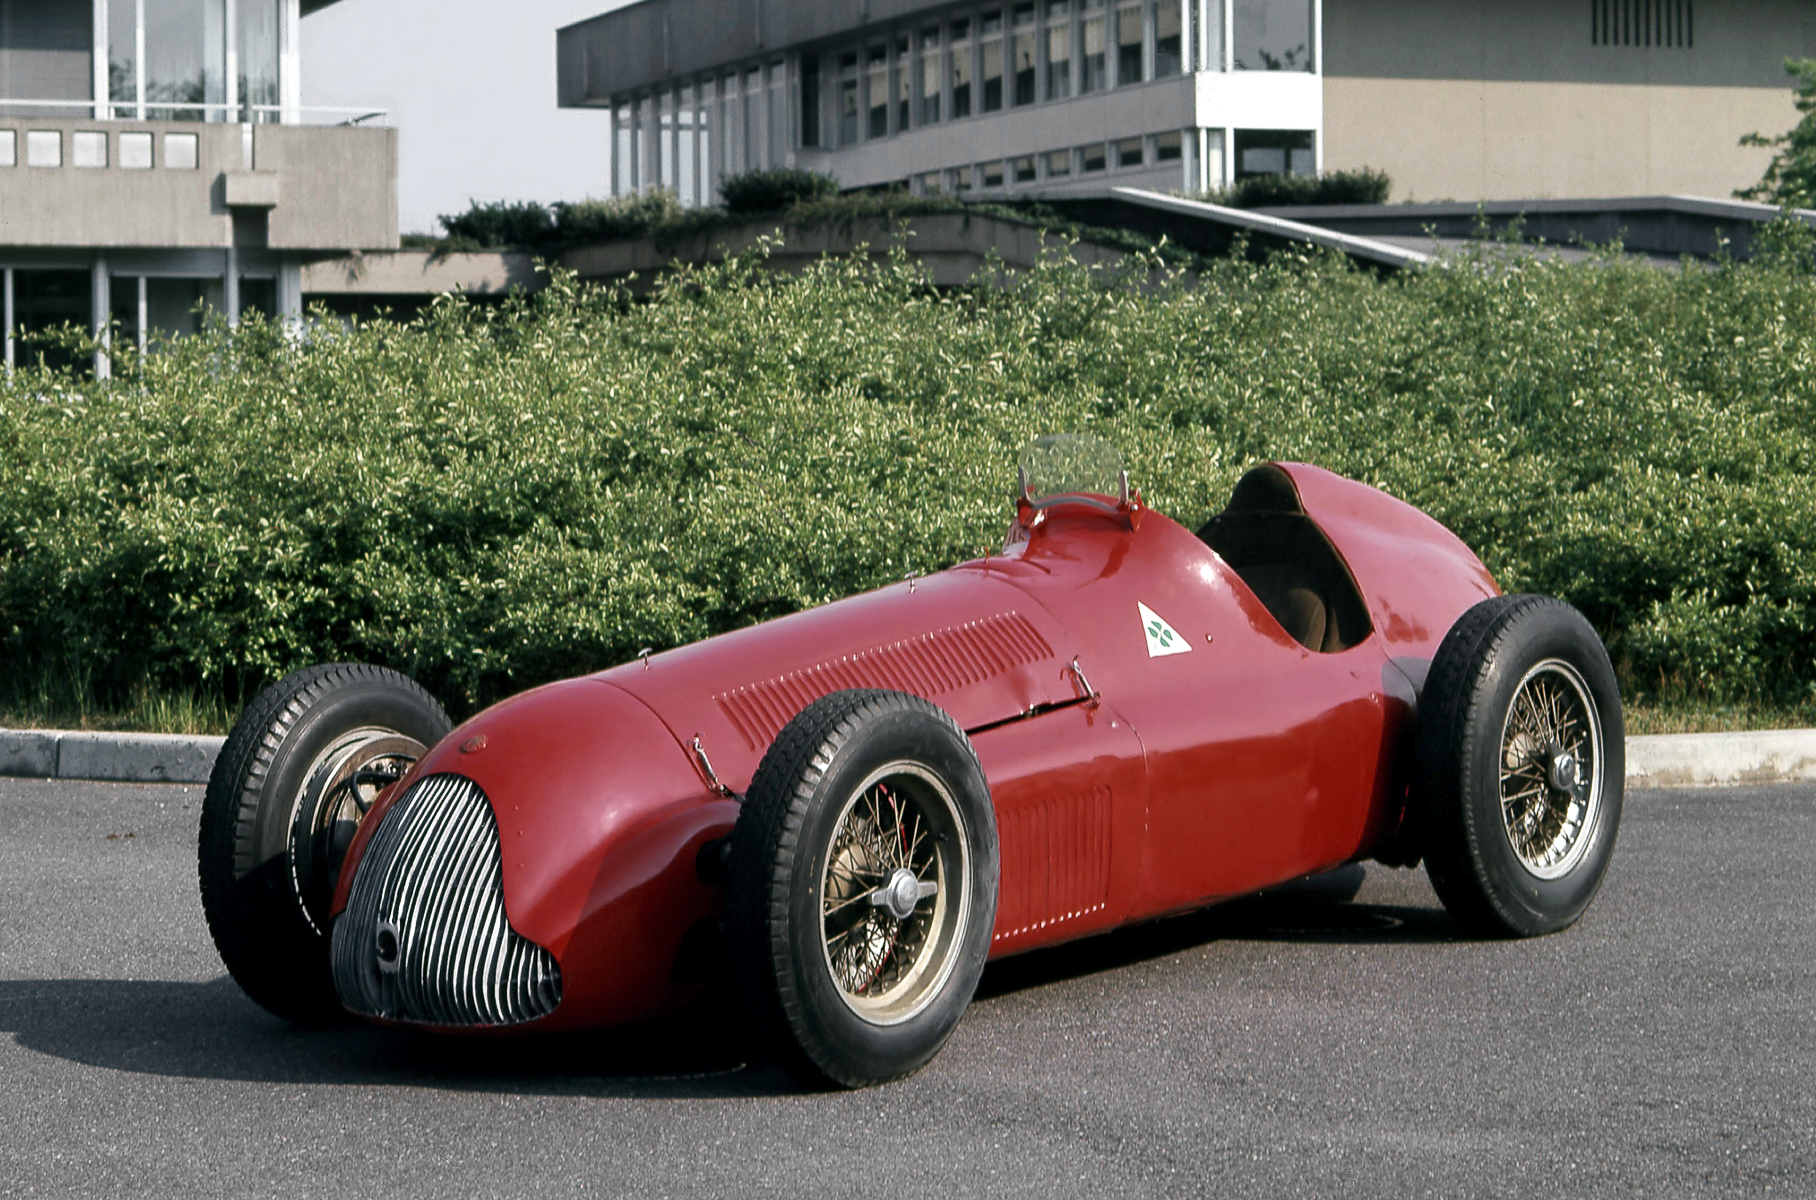 Первоначально цифры «159» носил гранприйный болид начала пятидесятых, чьи корни уходят в очень успешную довоенную «лодочку» 158 Alfetta с «велосипедными» колесами. В 1950-м суперкар в одни ворота выиграл первый в истории чемпионат Формулы 1. Пришедшая на смену Alfa Romeo 159 получила заднюю подвеску типа Де Дион и механический нагнетатель увеличенного объема. Он позволил форсировать 1,5-литровый двигатель примерно до 420 л.с. и выжимать свыше 300 км/ч, но расход топлива вырос до эпических значений.